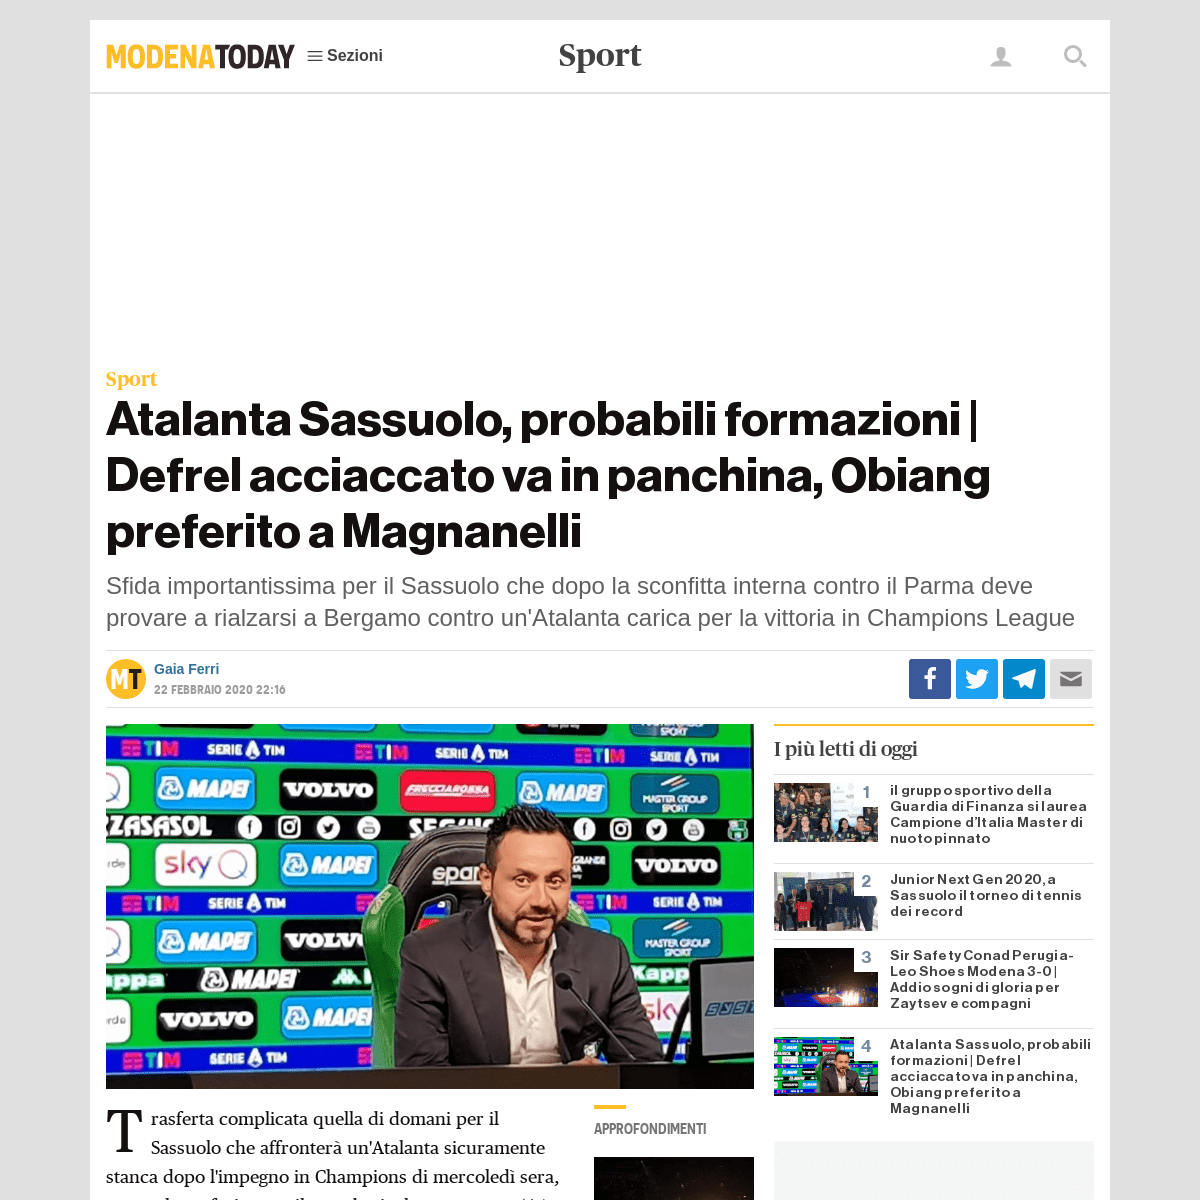 A complete backup of www.modenatoday.it/sport/probabili-formazioni-atalanta-sassuolo-23-febbraio-2020.html